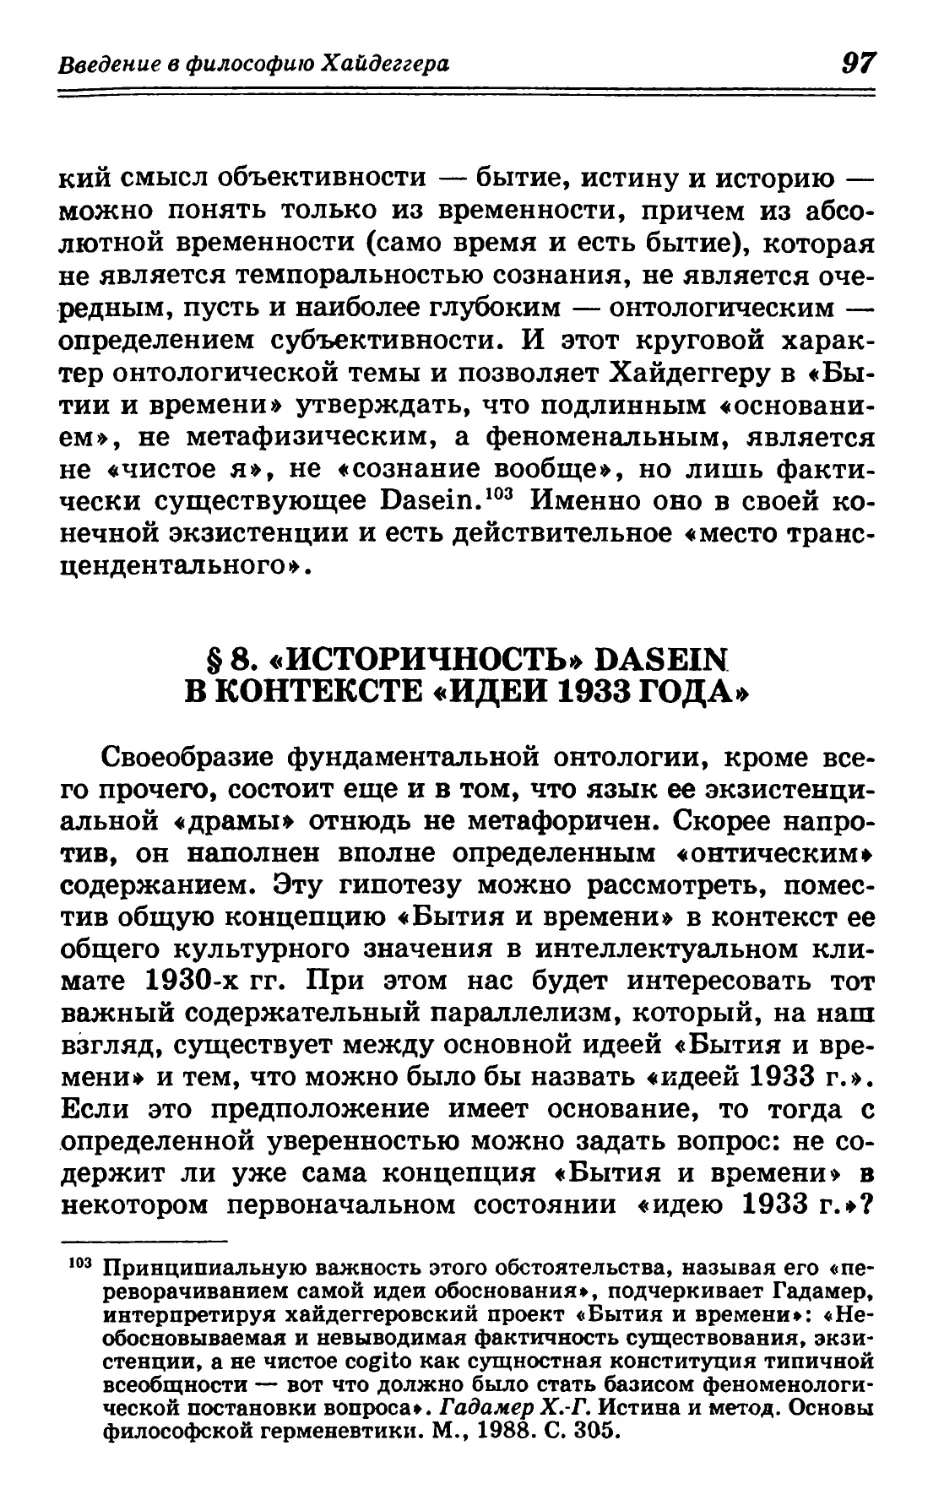 § 8. «Историчность» Dasein в контексте «идеи 1933 года»